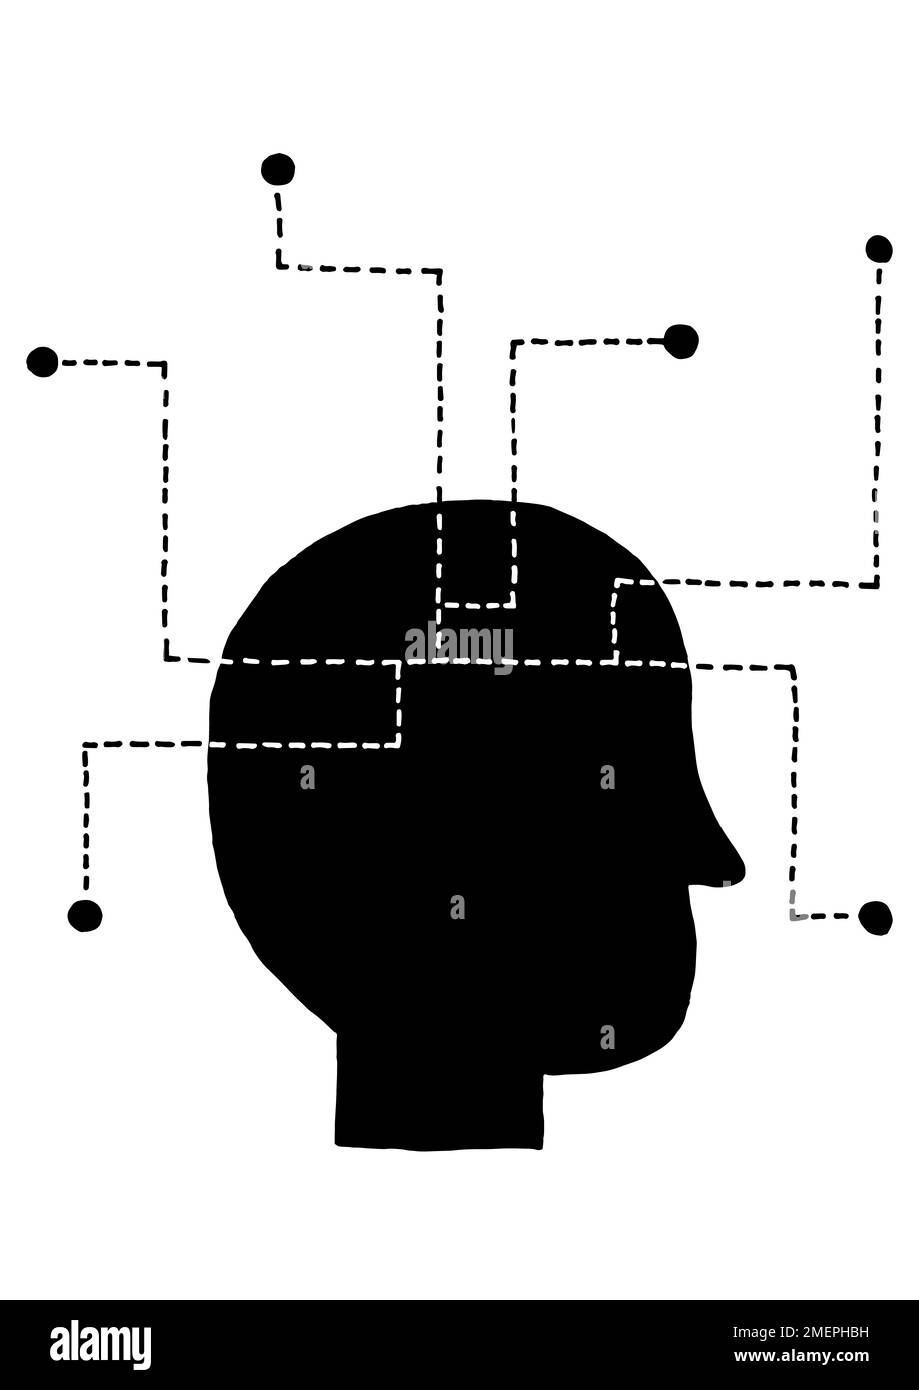 Gesicht im Profil mit mehreren gepunkteten Linien um das Gehirn Stockfoto